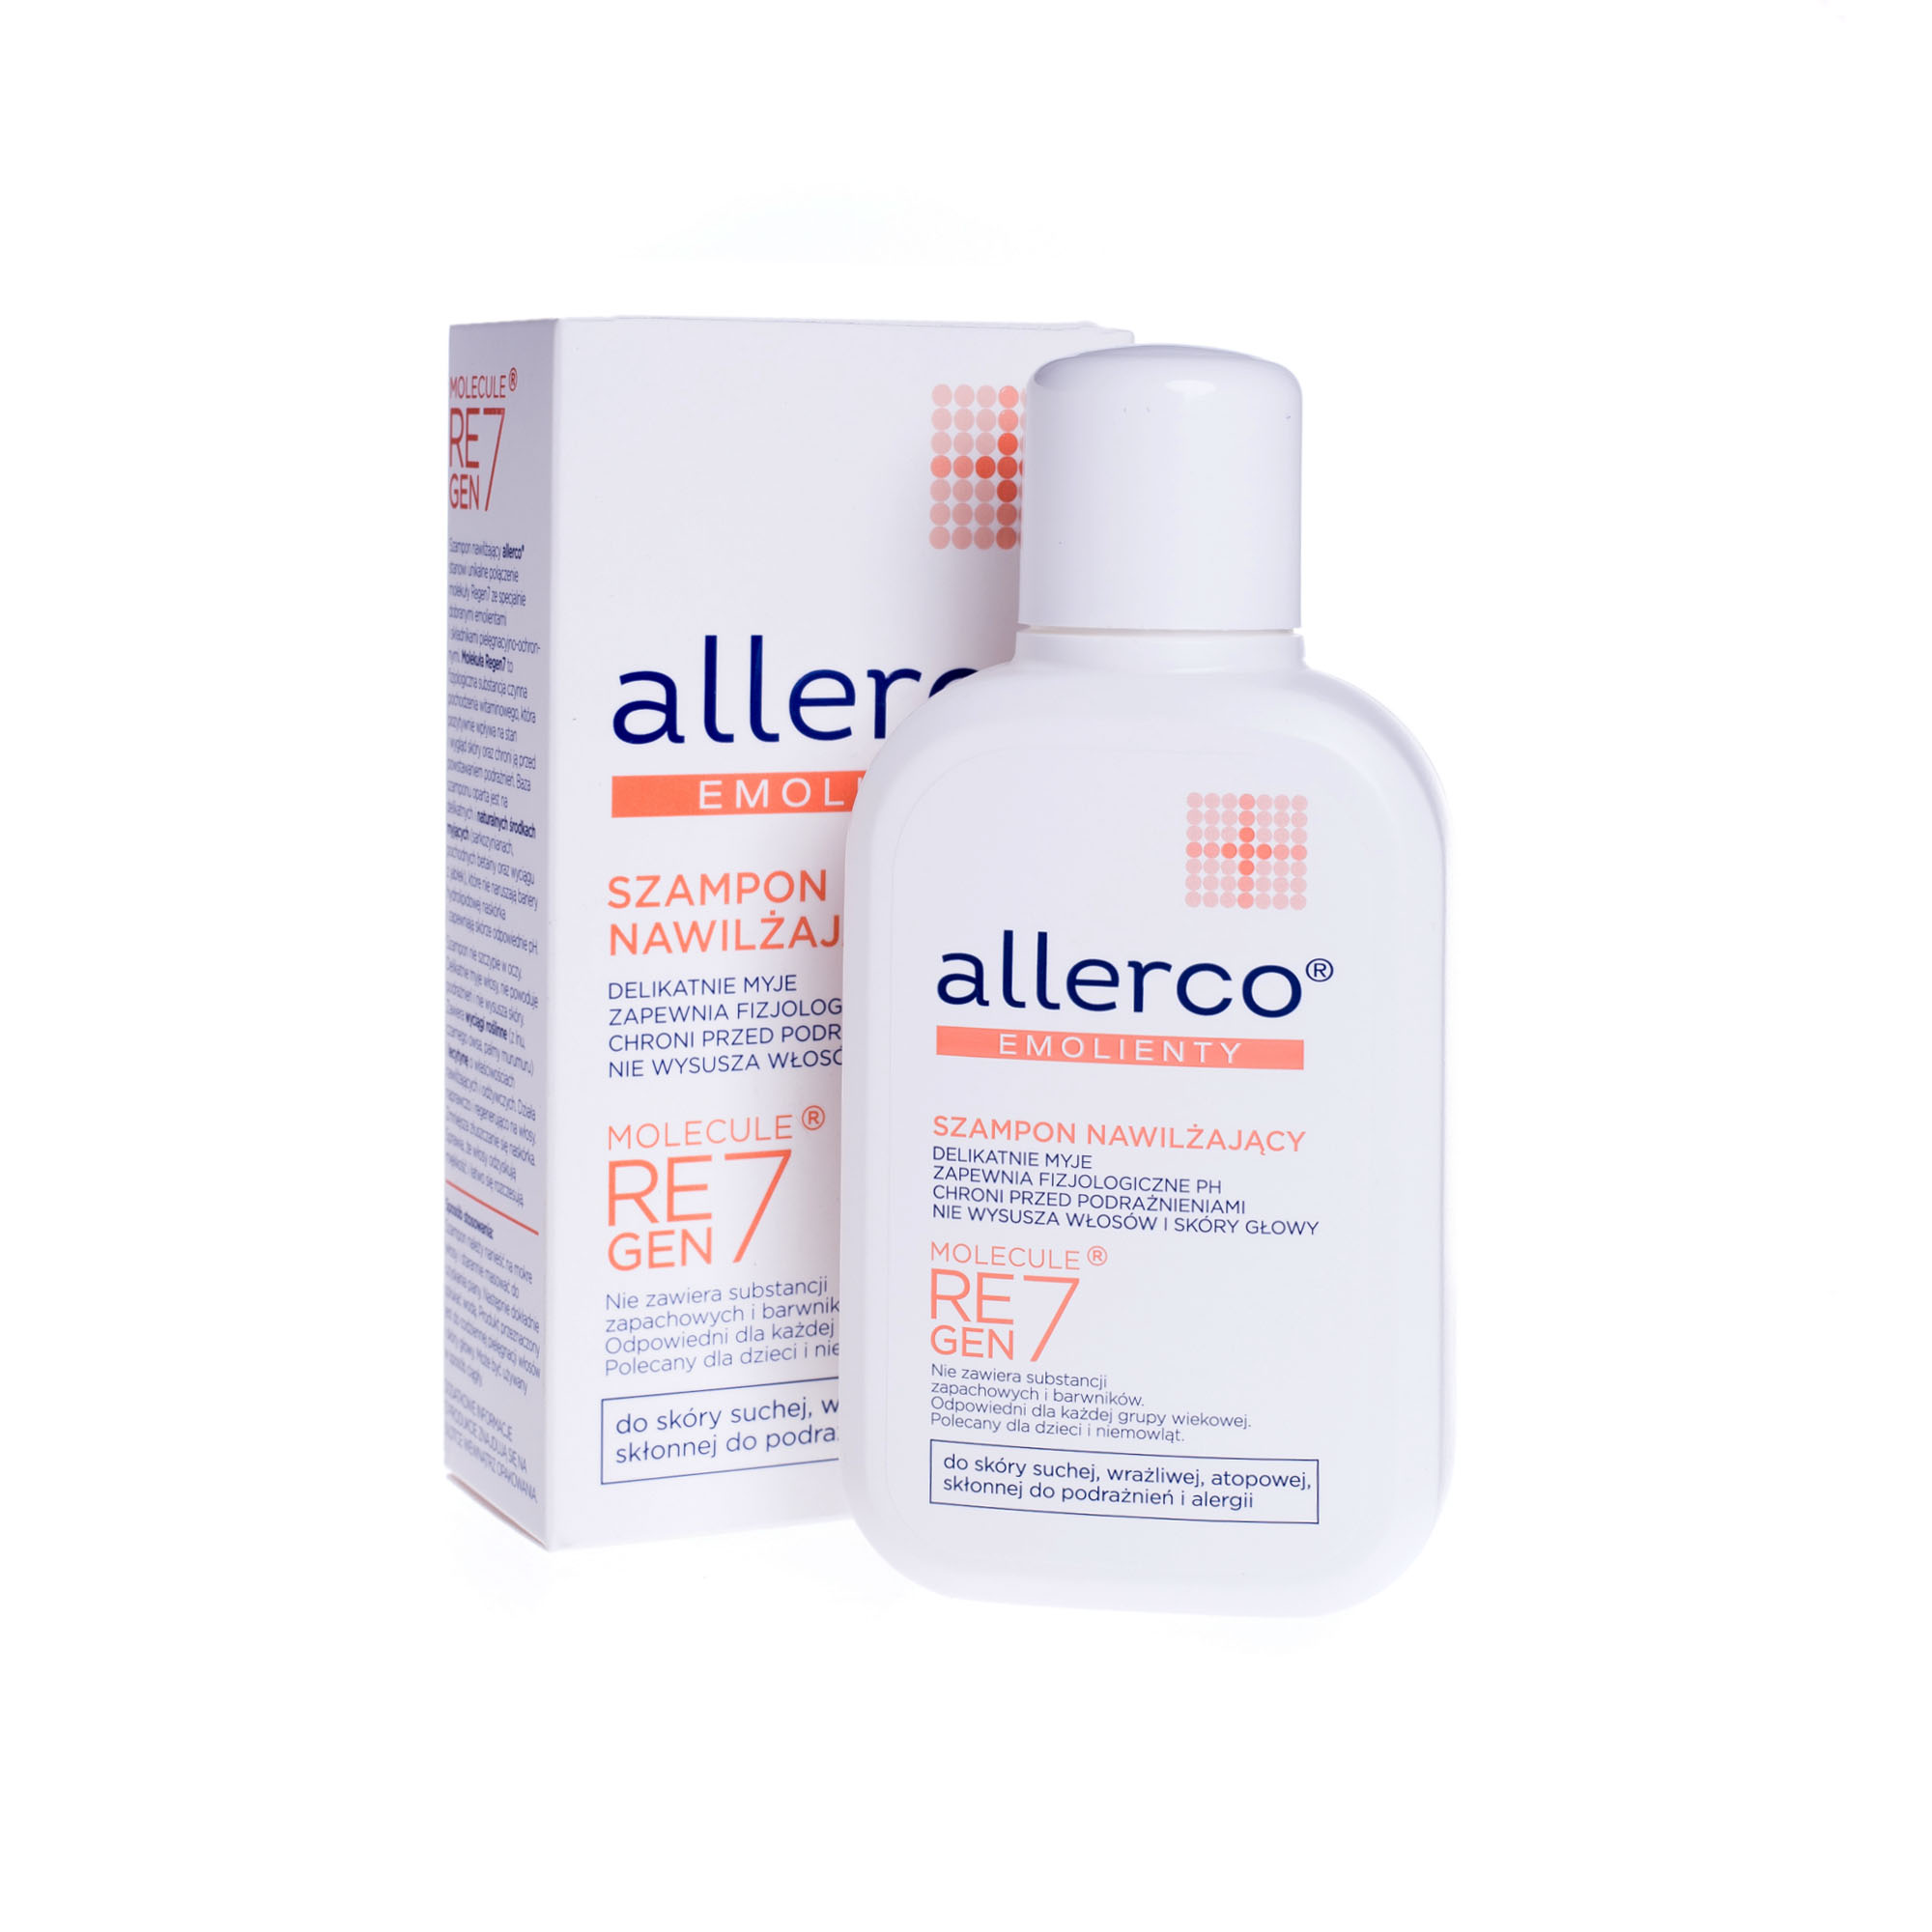 allerco szampon i odżywka